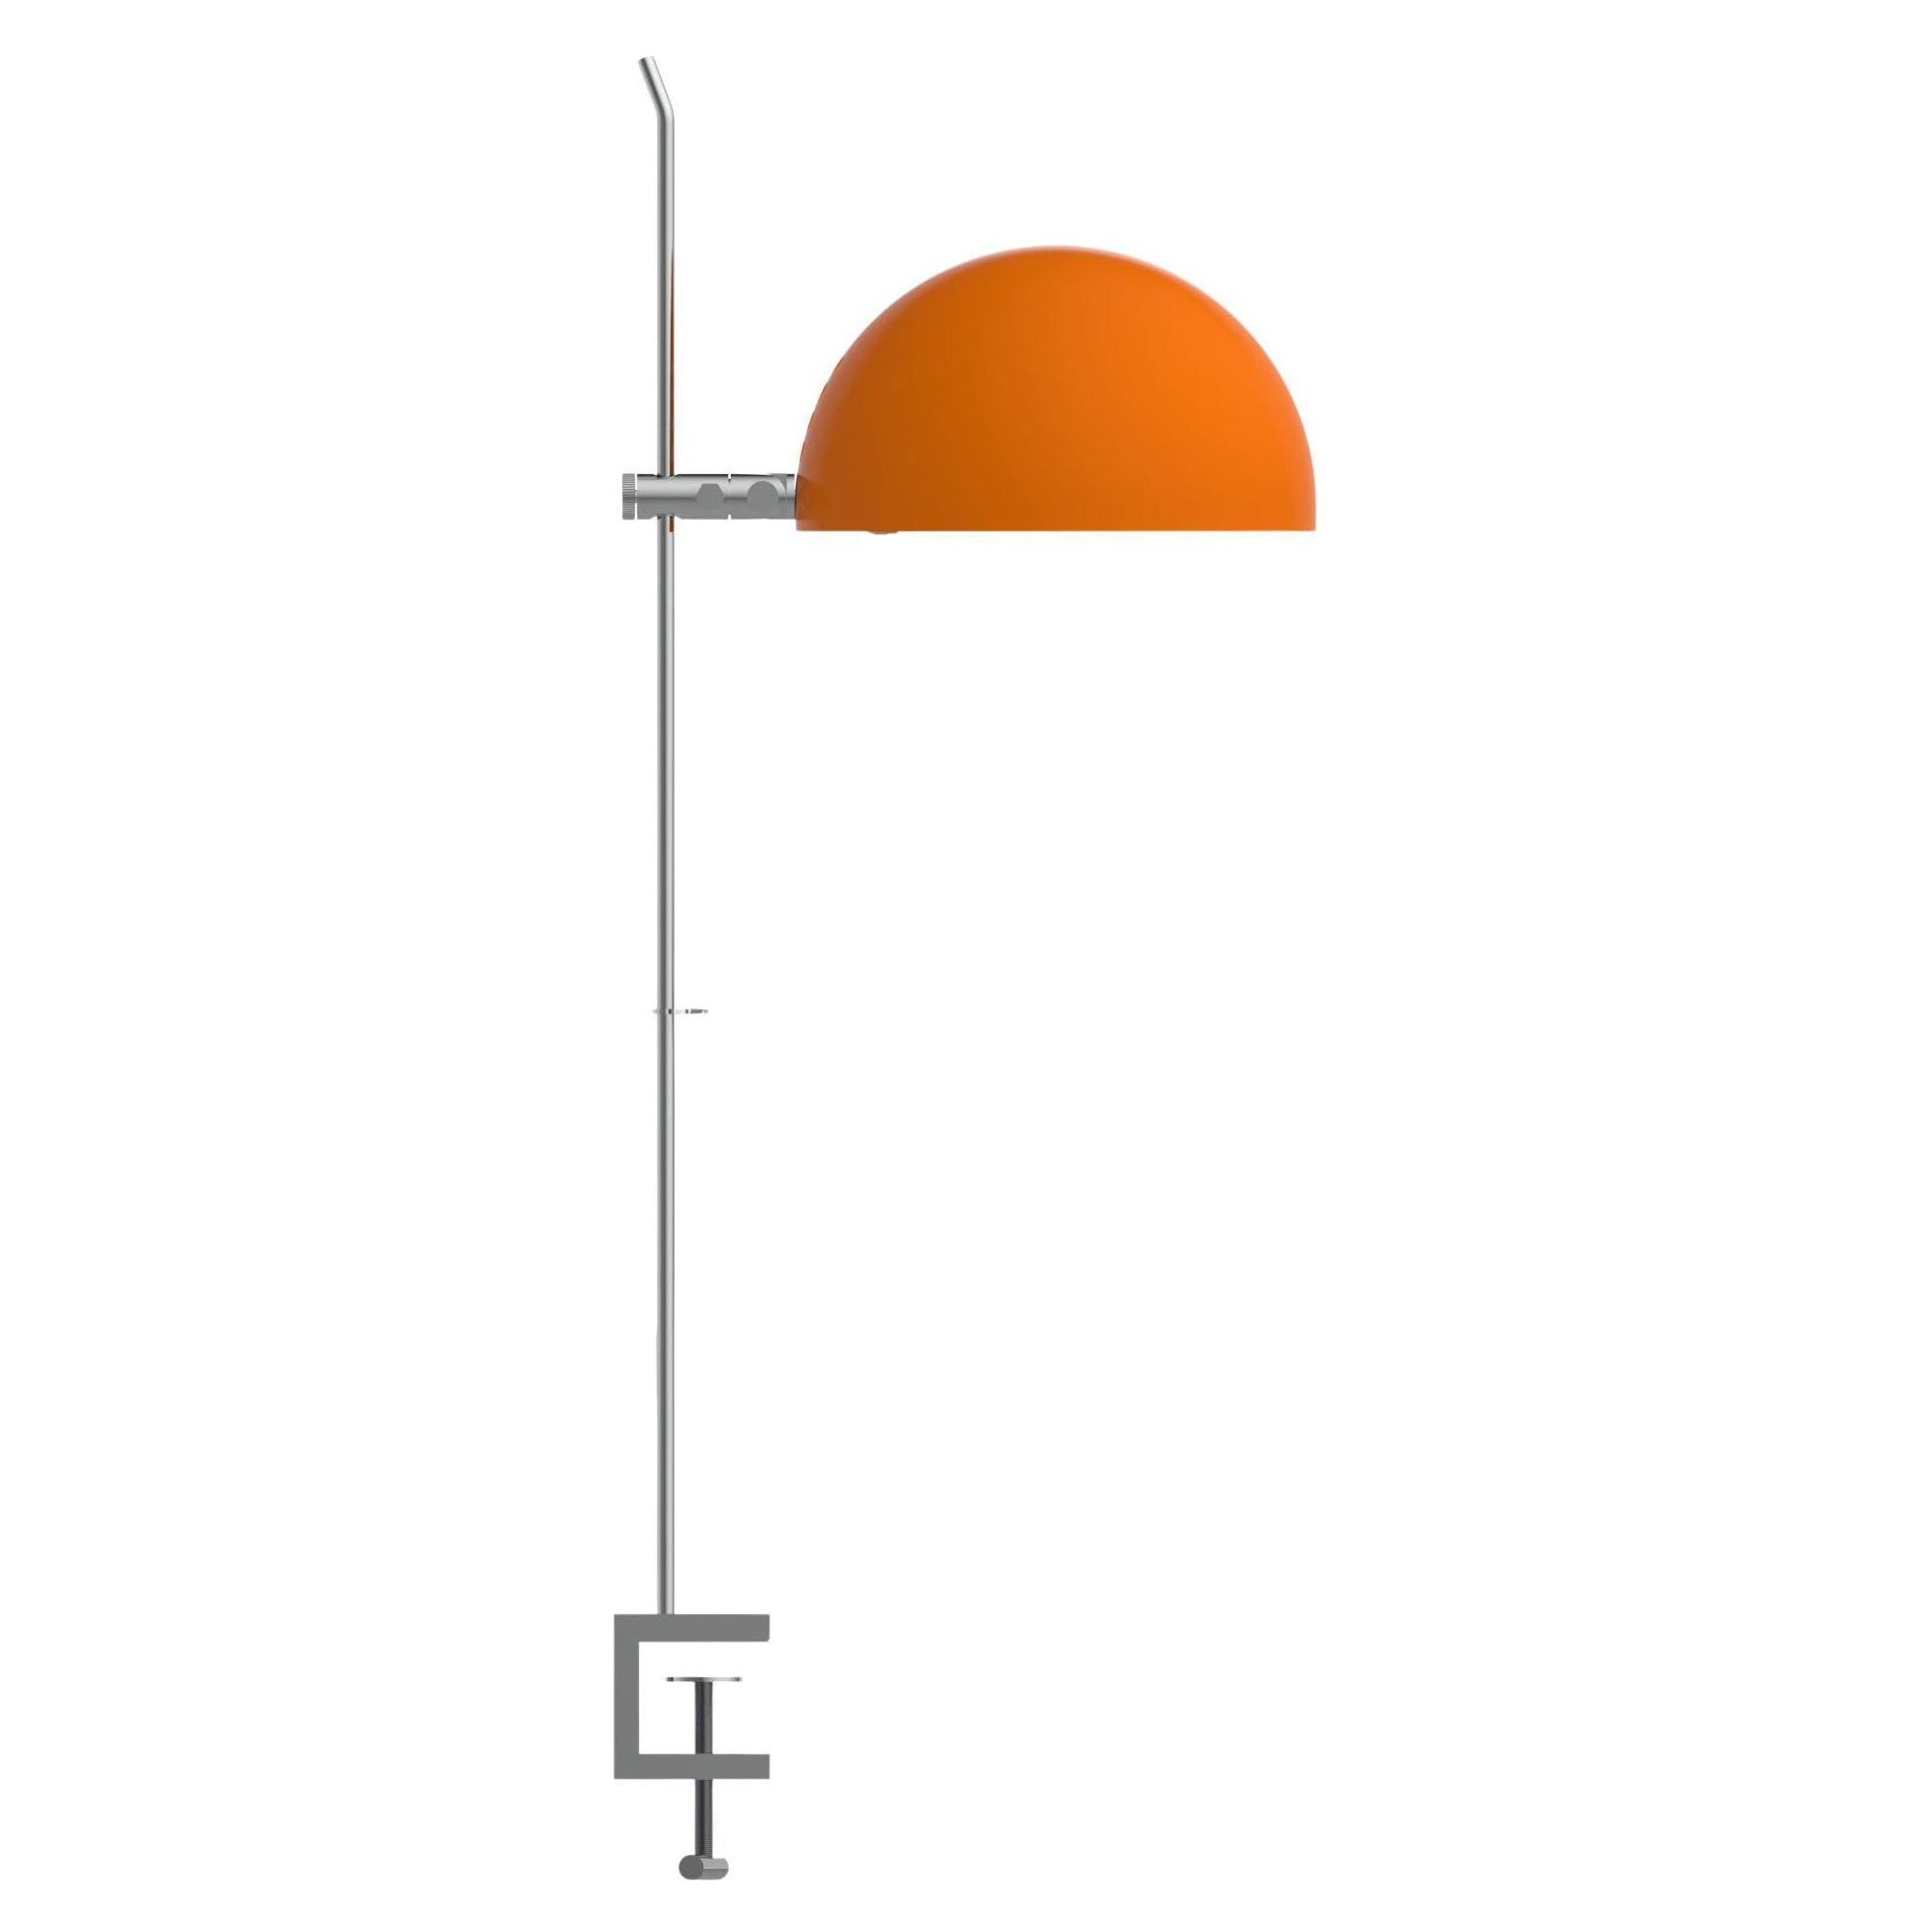 Alain Richard 'A22f' Task Lamp in Orange for Disderot For Sale